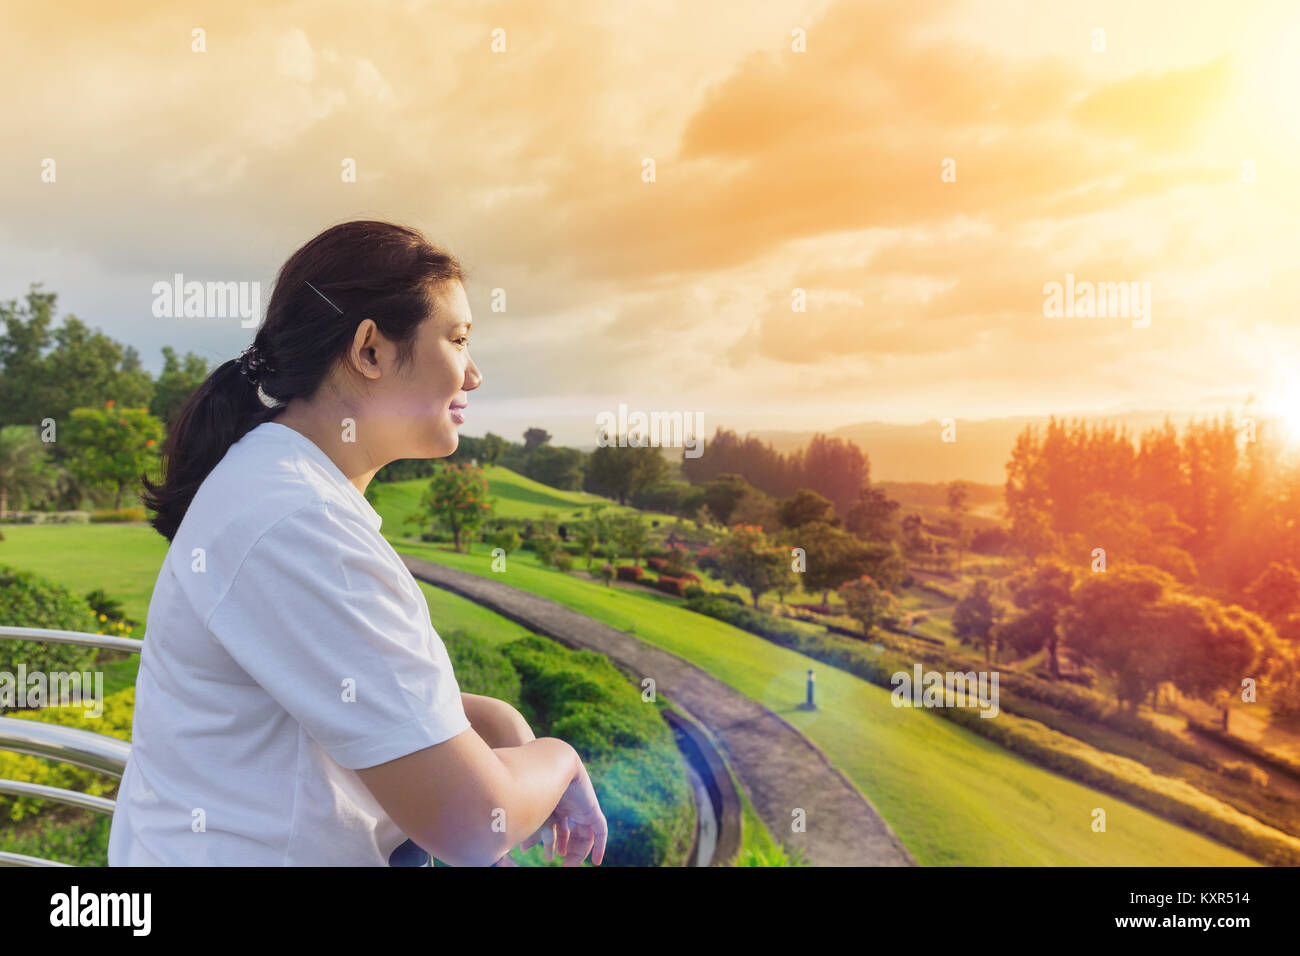 Nachdenken über oder fehlende bestanden gute Speicher asiatische Frauen lächeln auf der Suche nach dem zukünftigen Konzept auf die Natur Park sunrise Sky Stockfoto